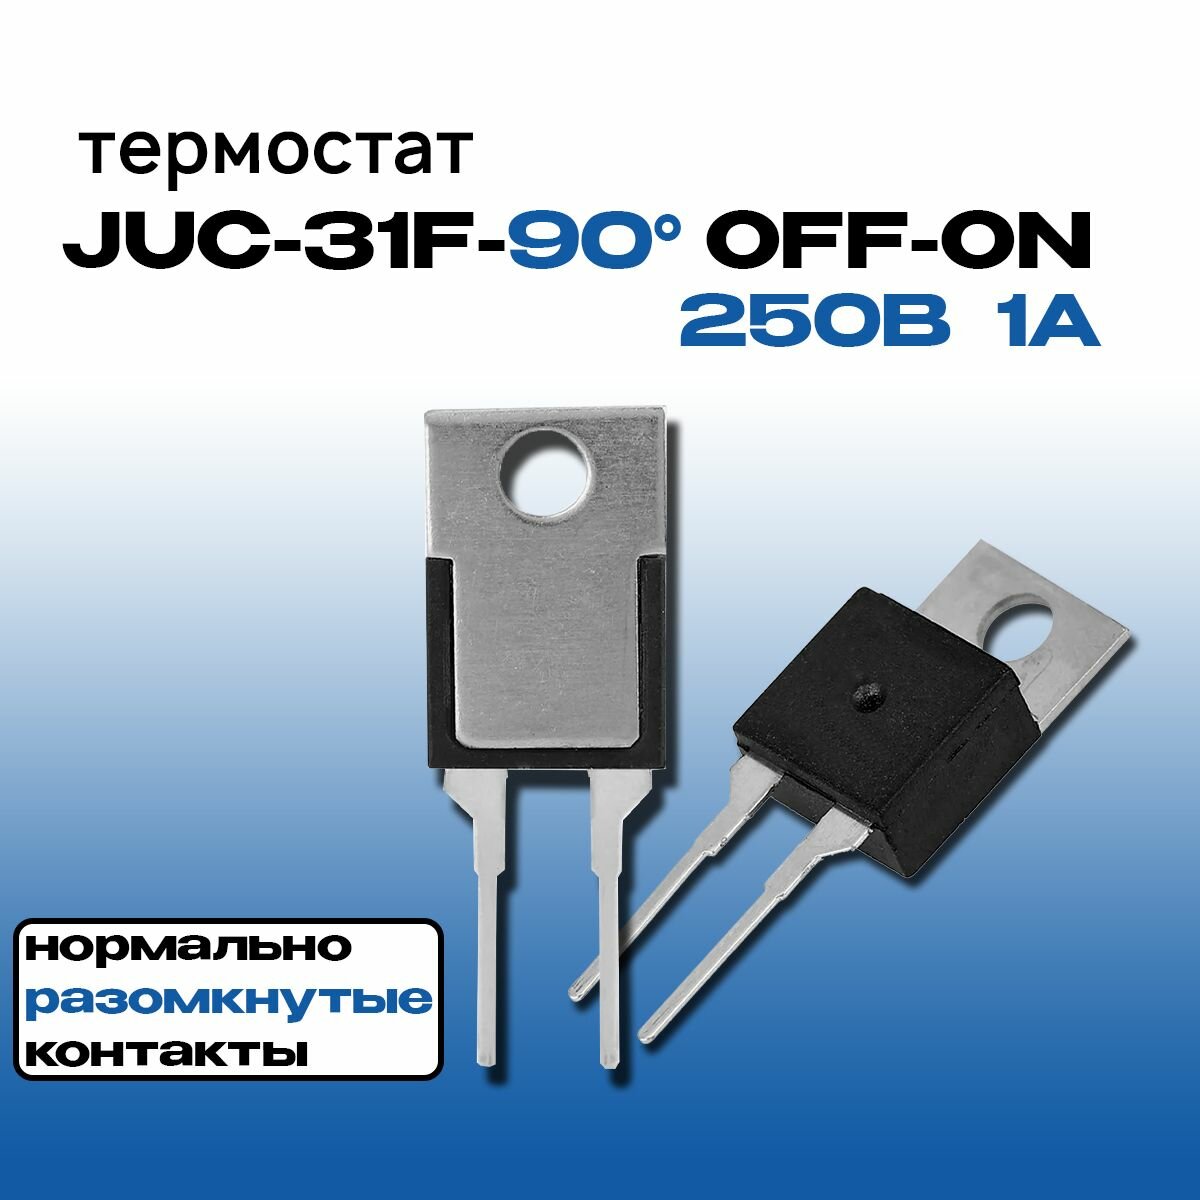 Термостат (термореле) JUC-31F-90 OFF-ON TO-220 250В 1А